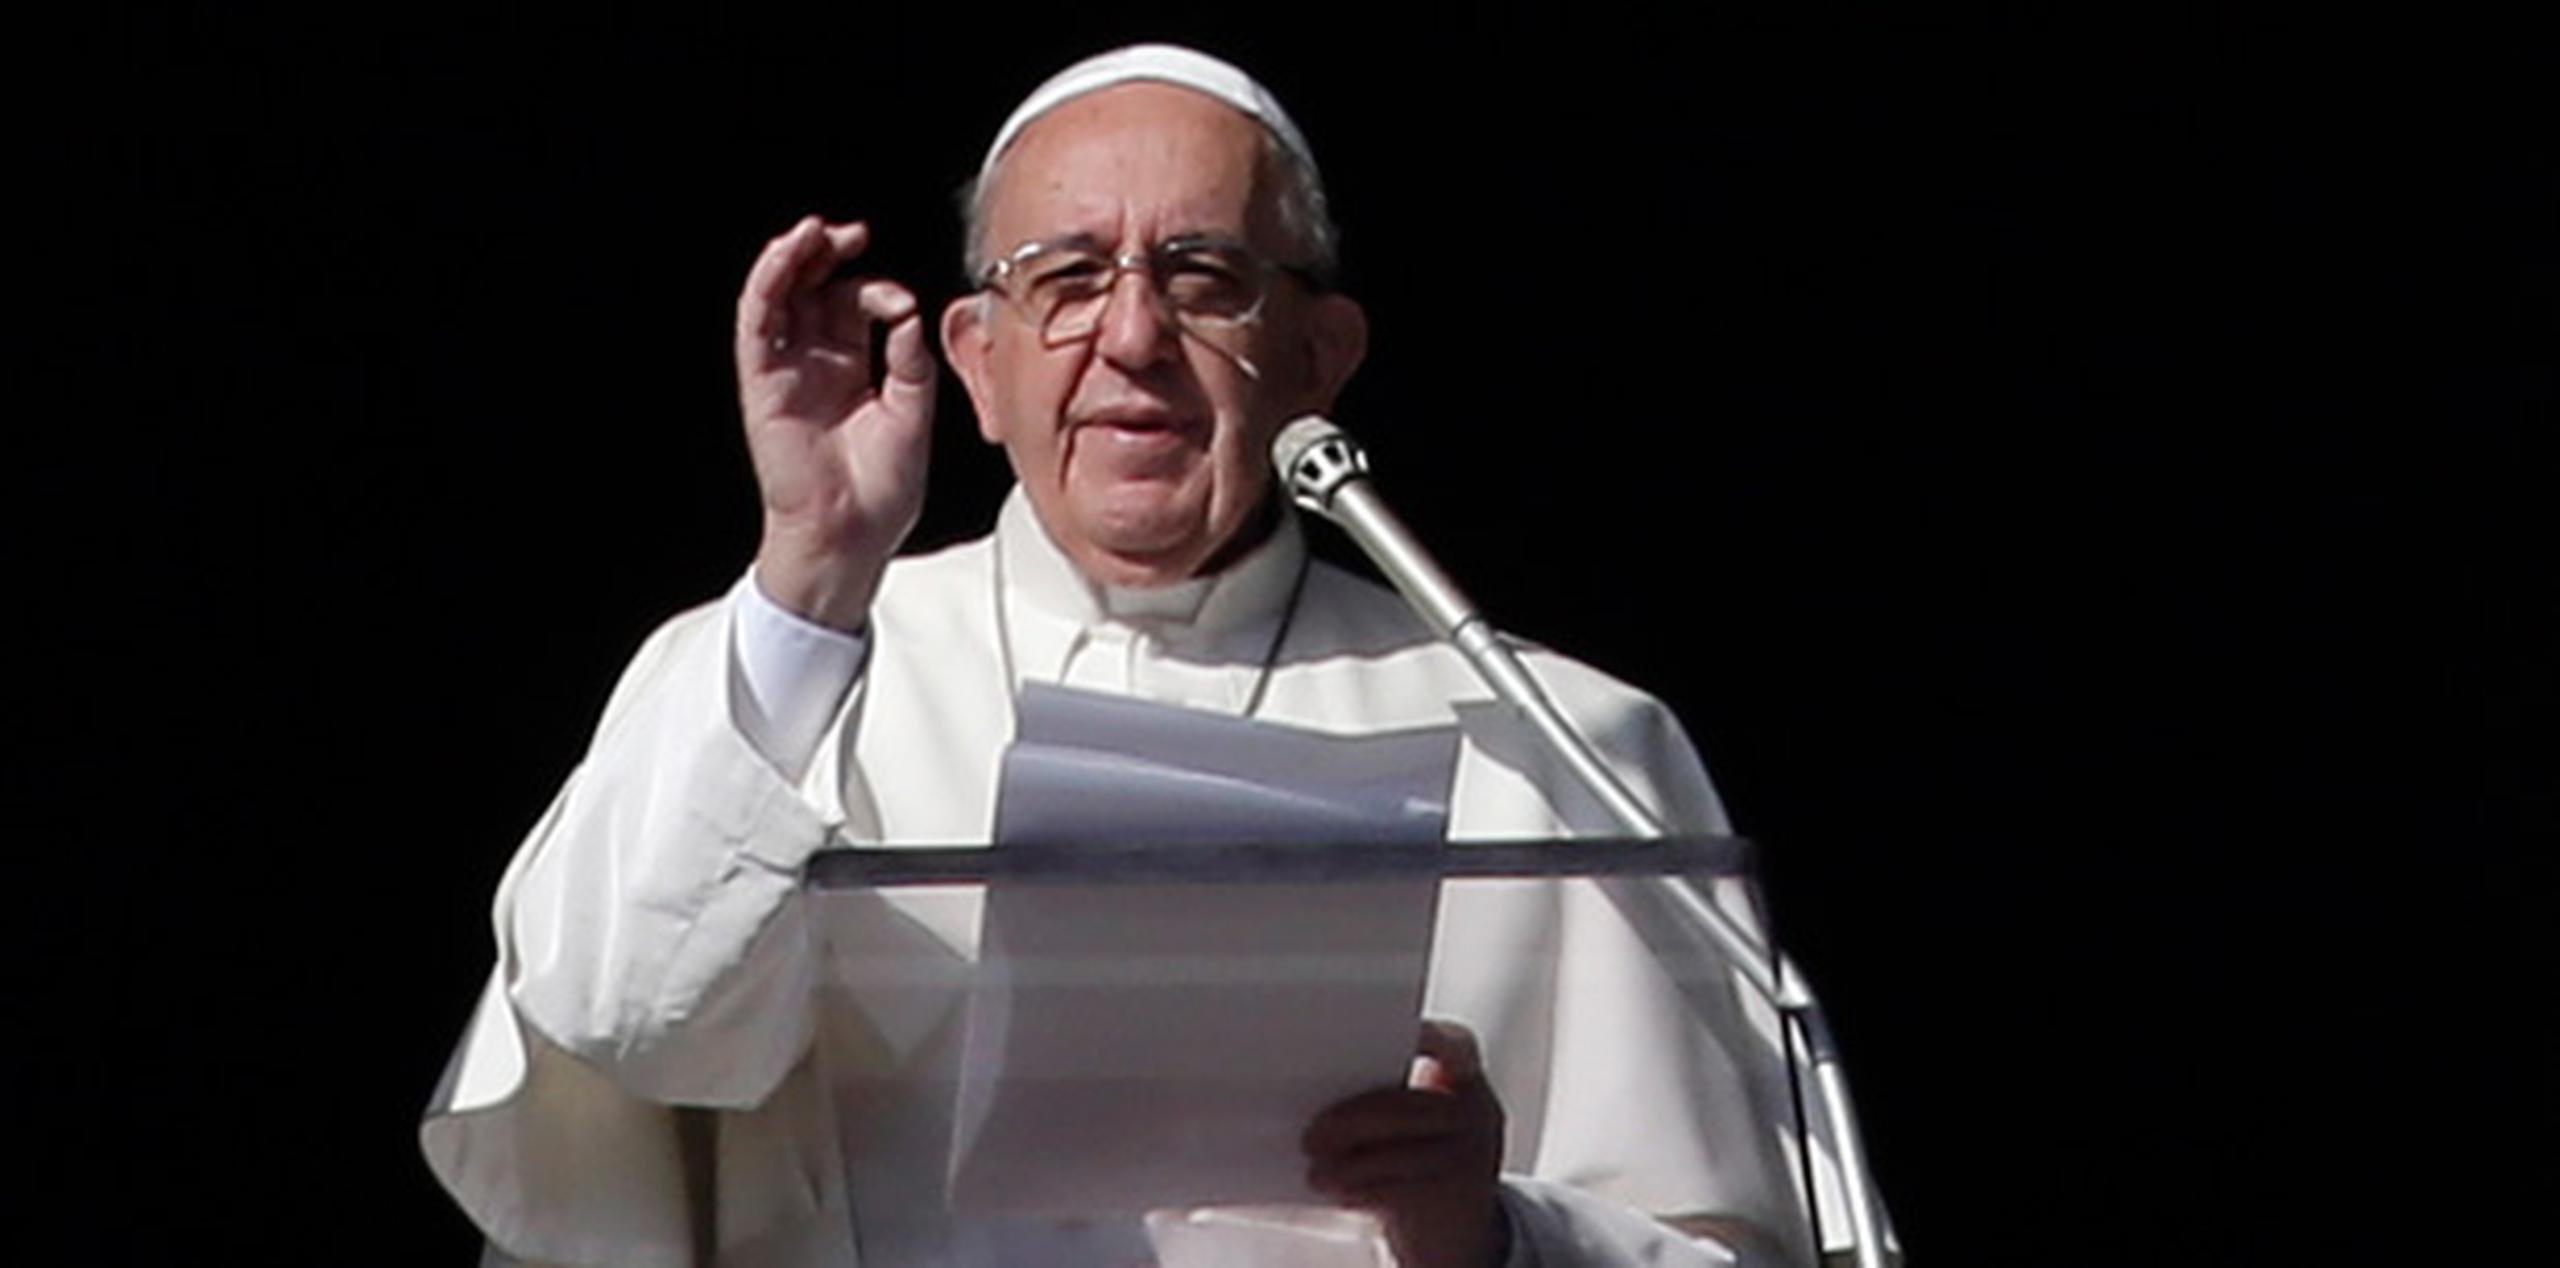 El pontífice argentino dirigió a la Curia reunida en el Vaticano un discurso en el que citó las "virtudes necesarias" que deben tener los miembros de la Iglesia. (AP)